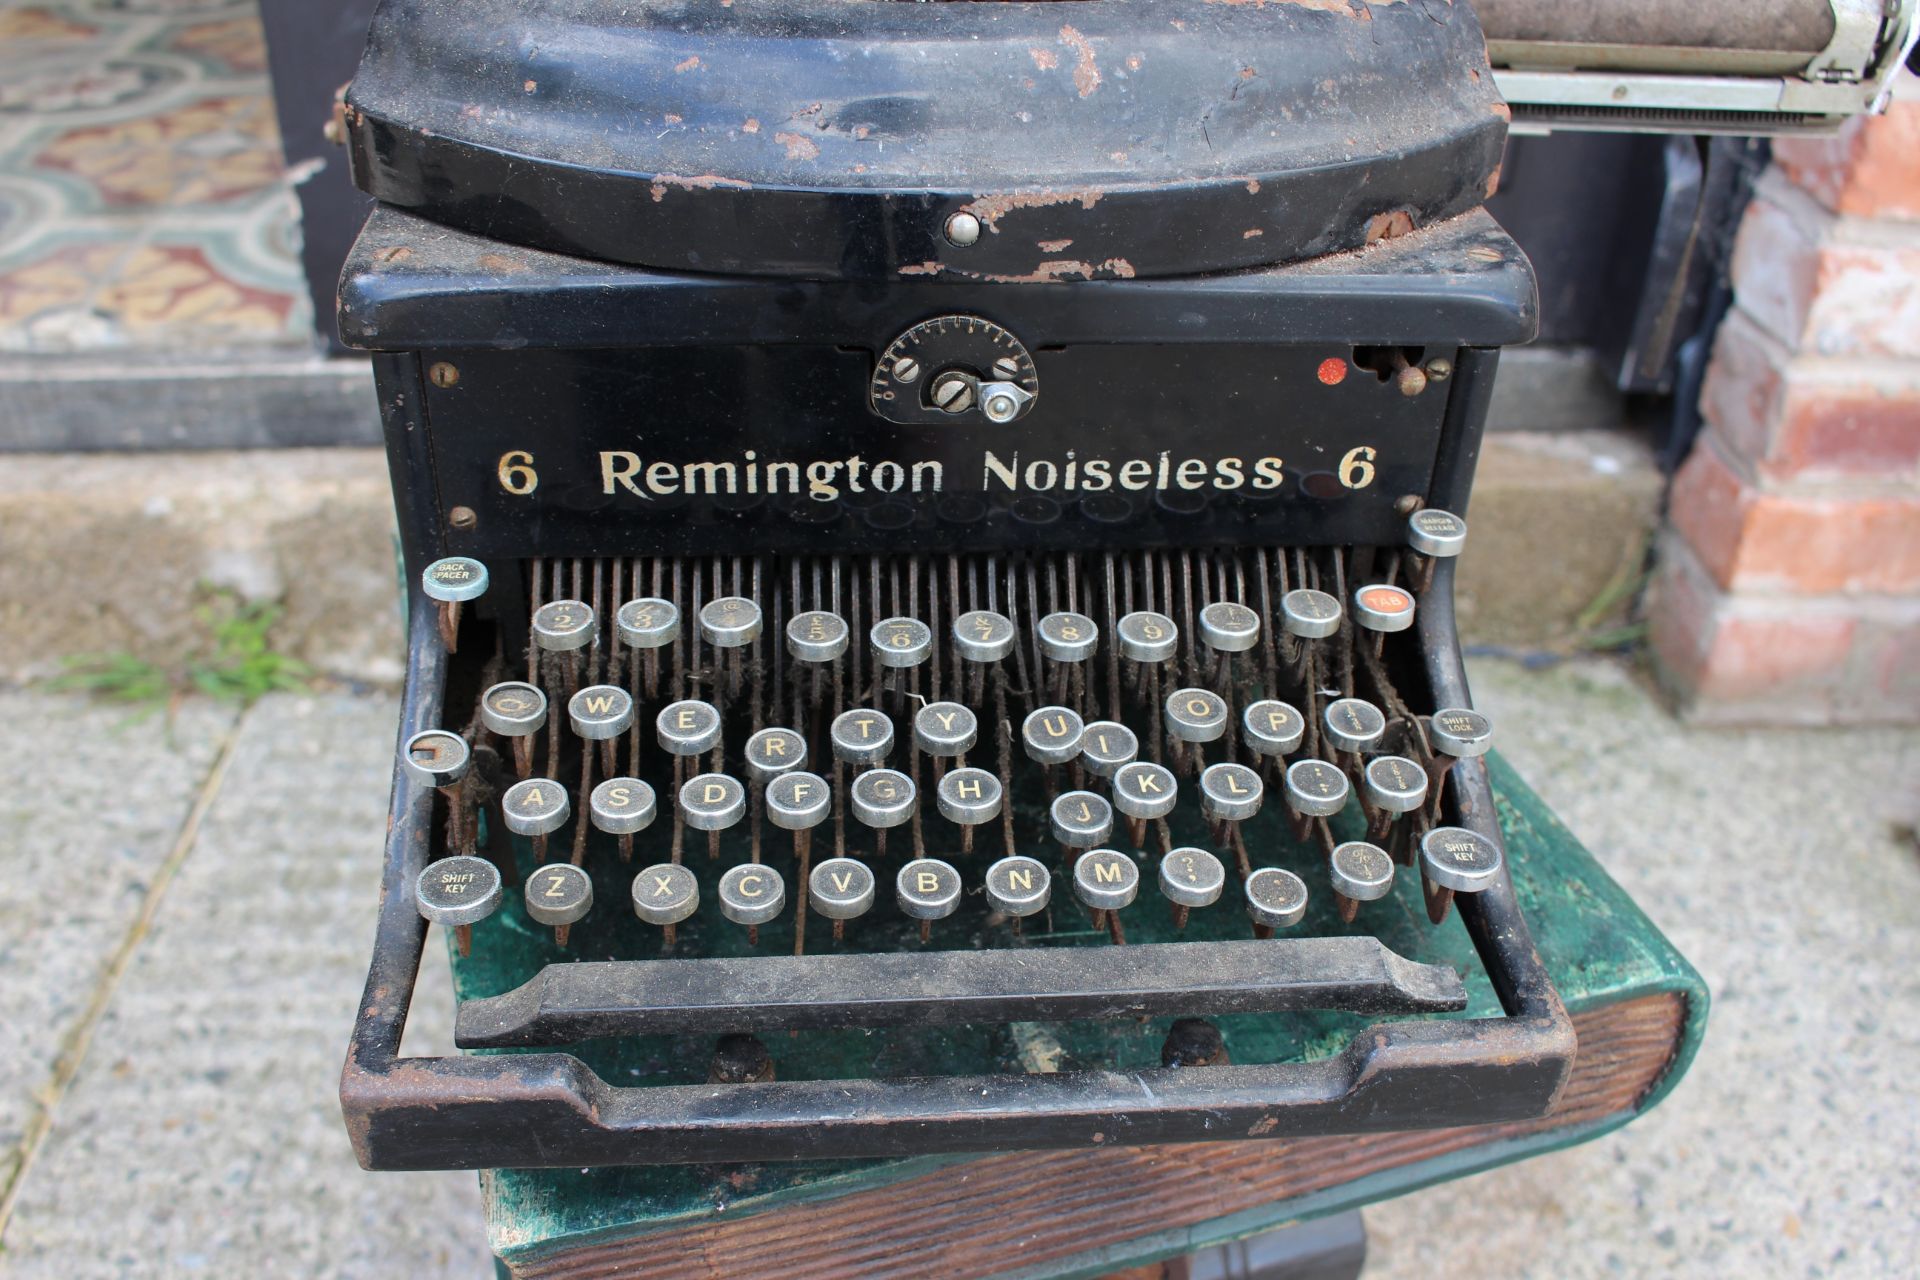 Vintage American Remington Noiseless 6 Typewriter - Image 2 of 5